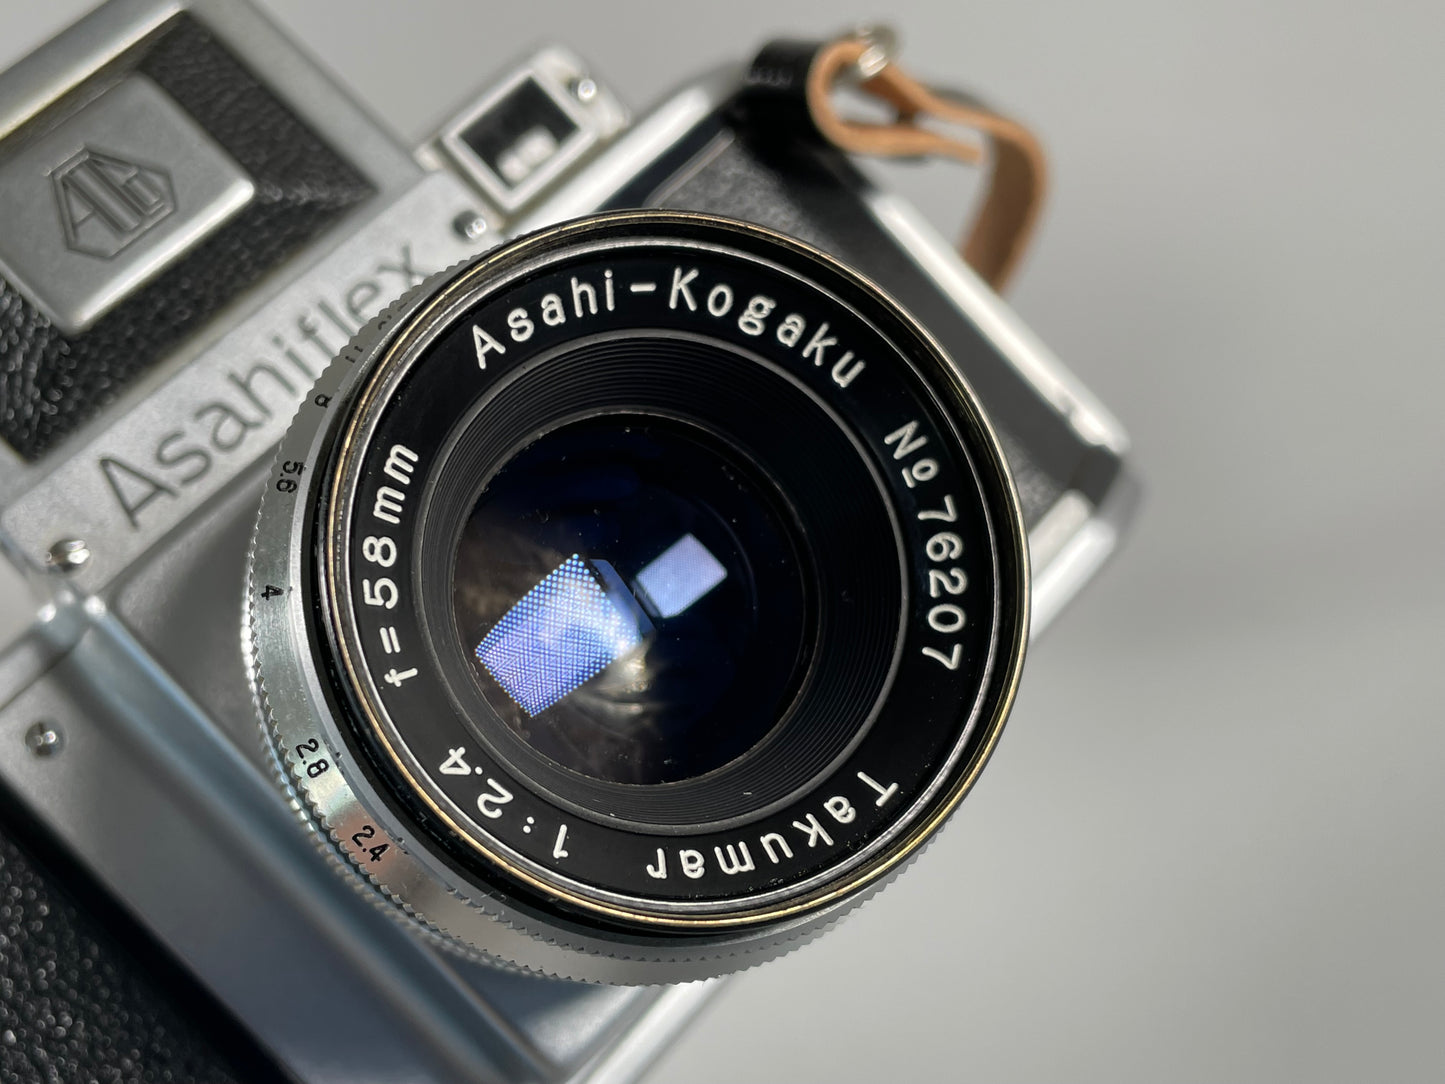 Asahiflex Takumar 1:2.4 f=58mm フィルムカメラ古いカメラ